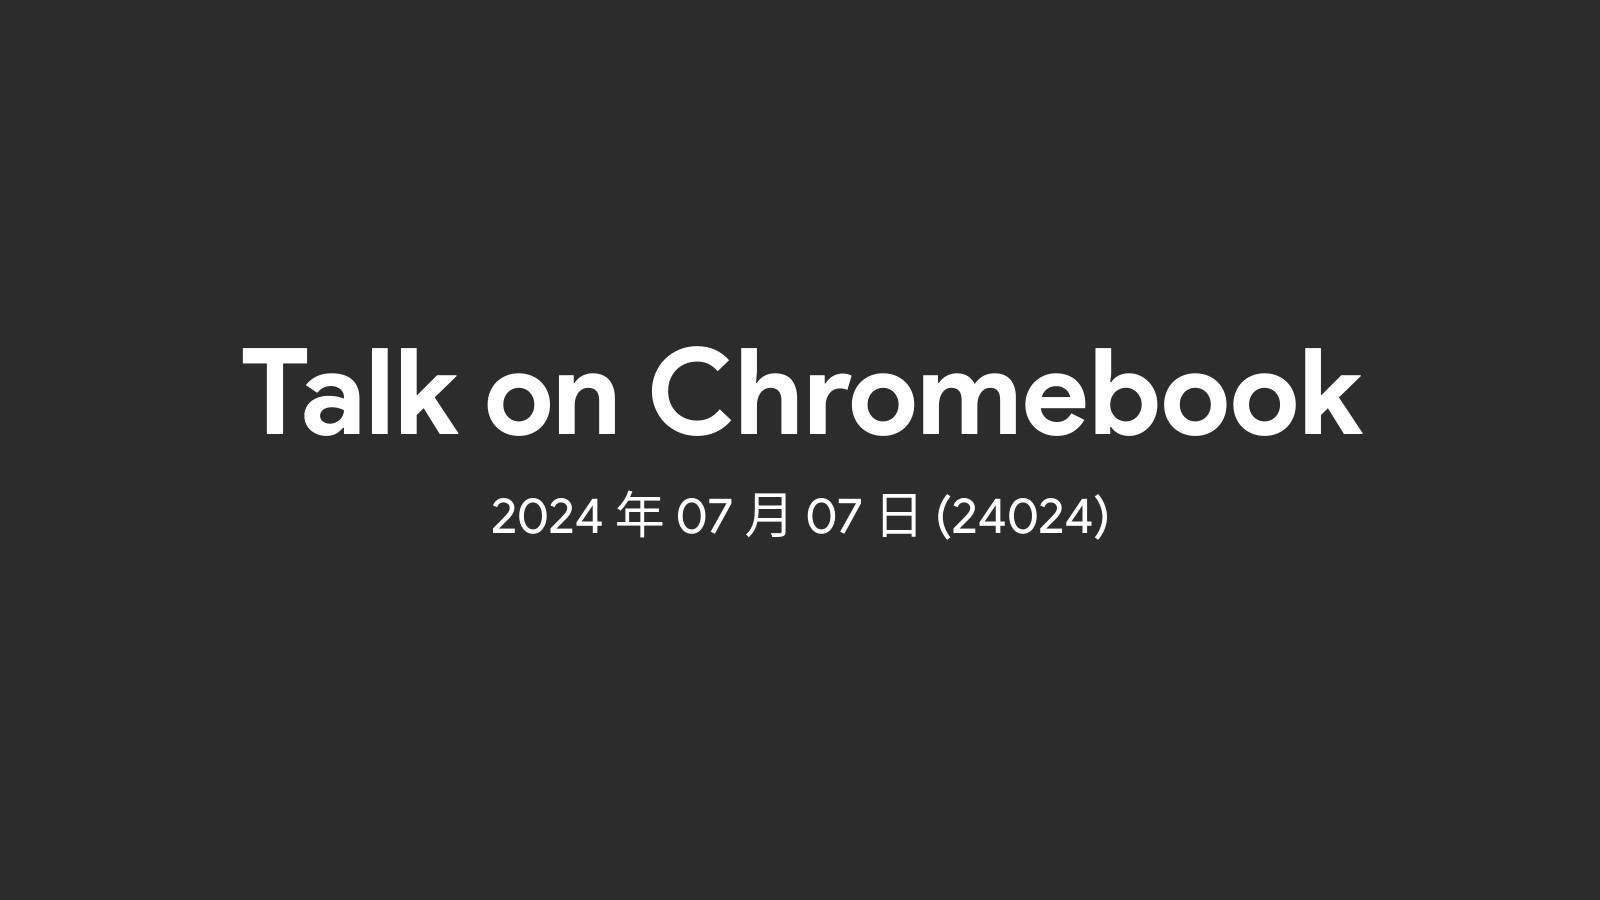 2024年07月07日 – 週間 Chromebook ニュース (24024) のアイキャッチ画像